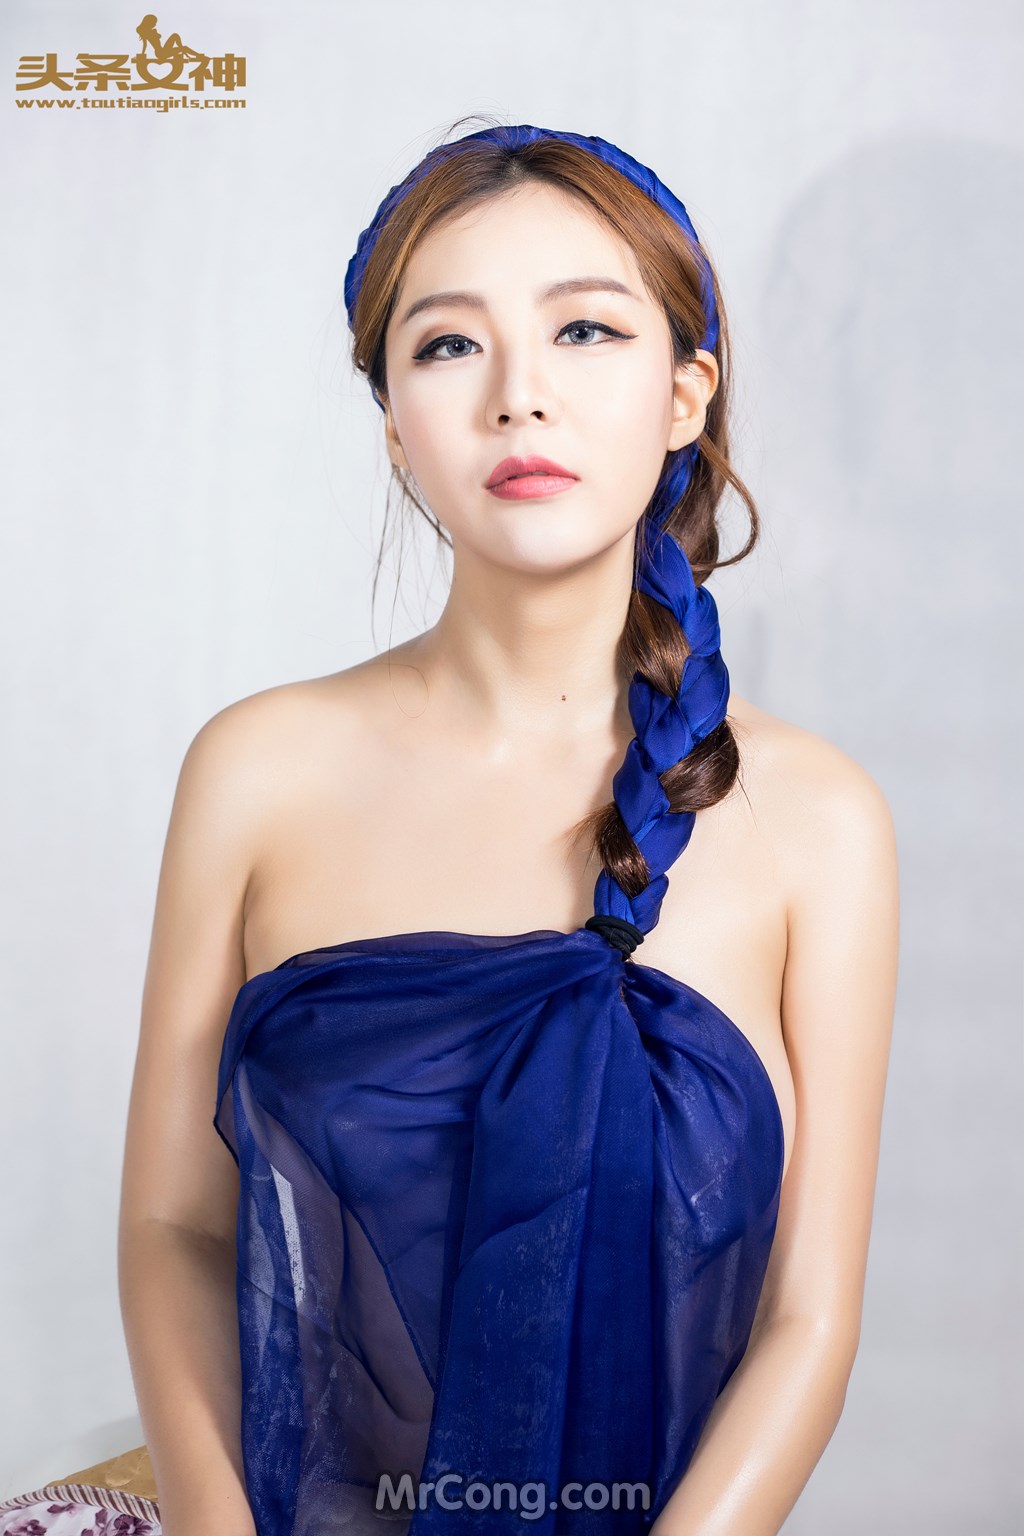 TouTiao 2016-08-11: Model Wang Yi Han (王一涵) (41 photos) photo 2-9